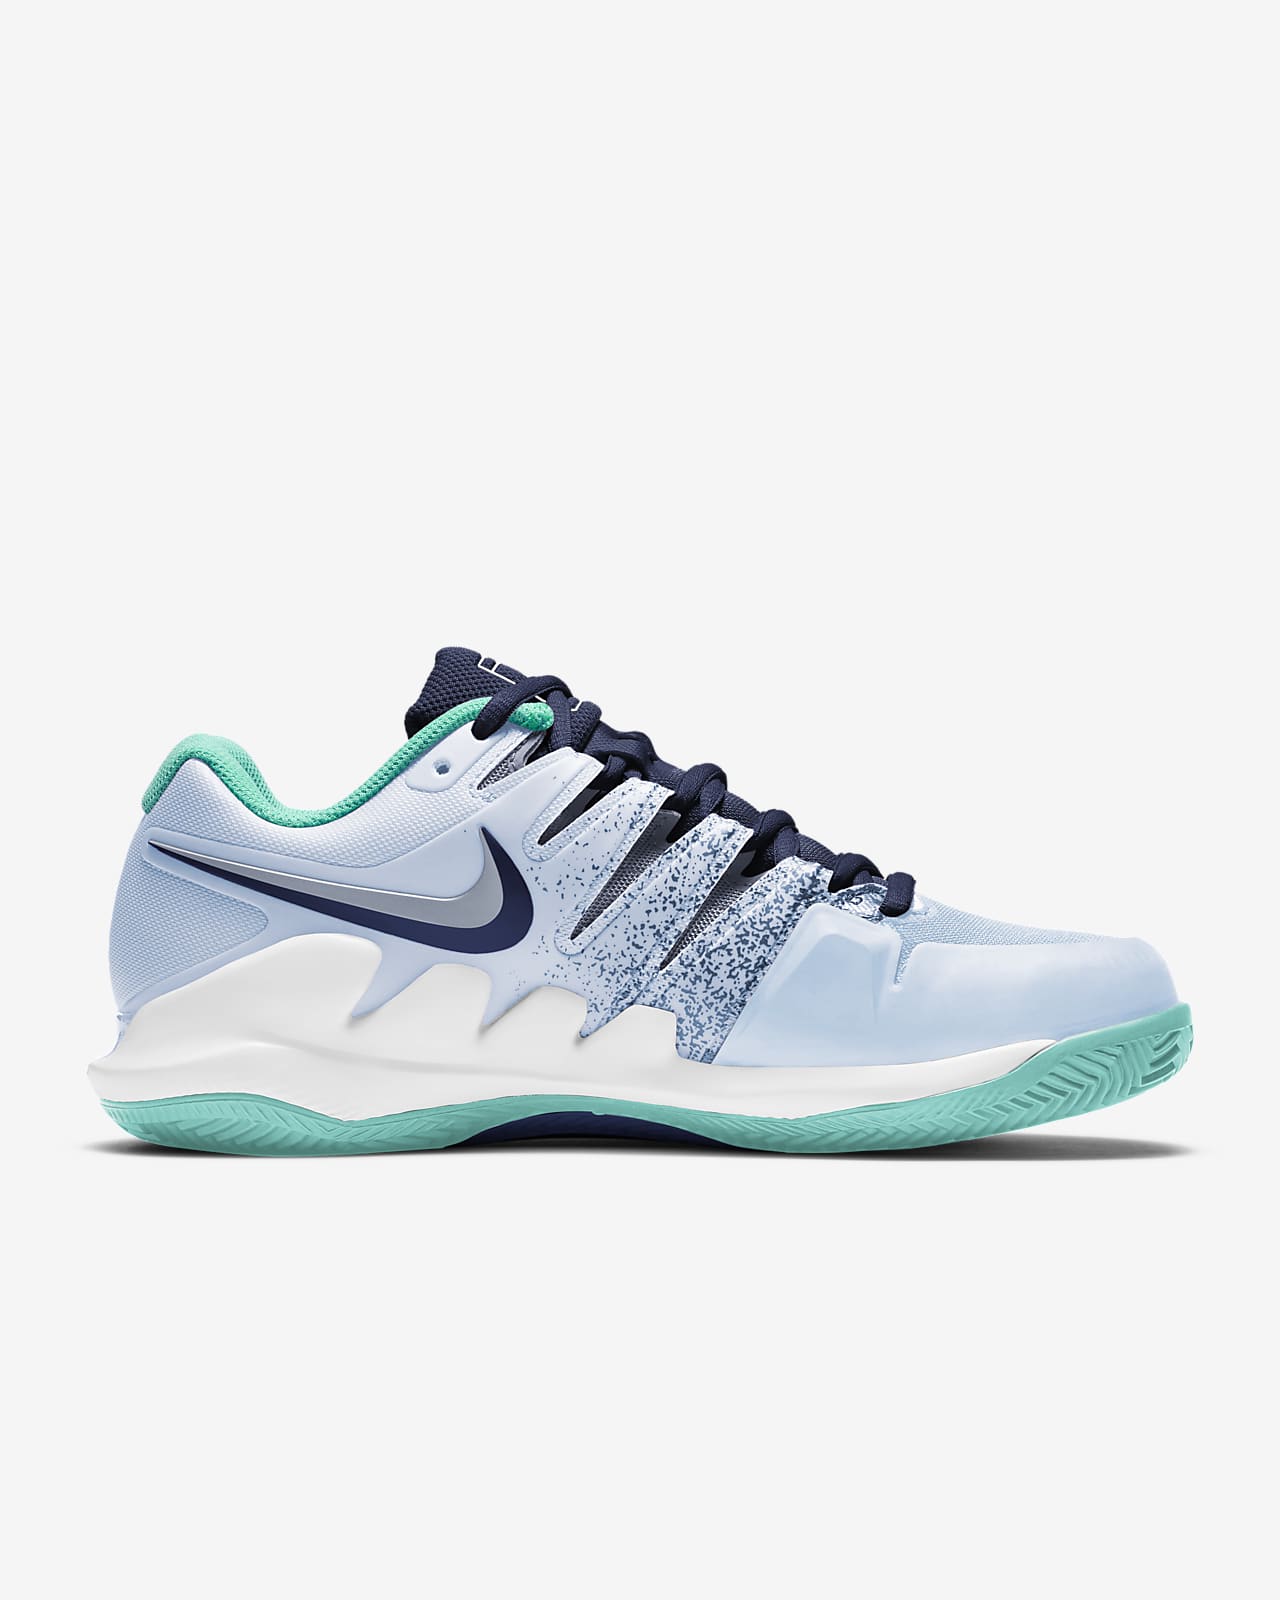 NikeCourt Air Zoom Vapor X Kadın Toprak Kort Tenis Ayakkabısı